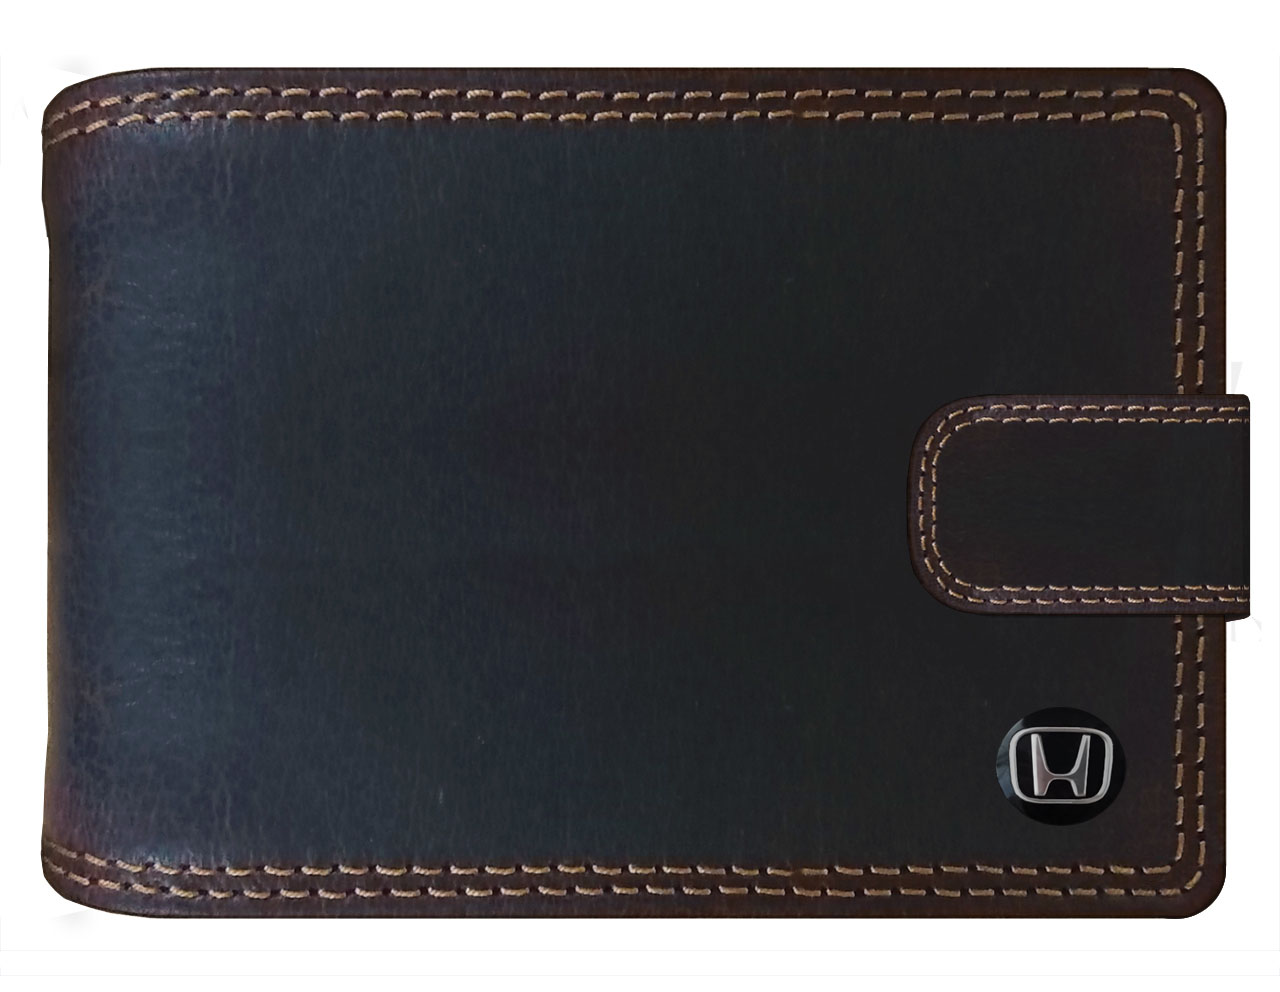 HONDA kožená pánská peněženka hnědá RFID